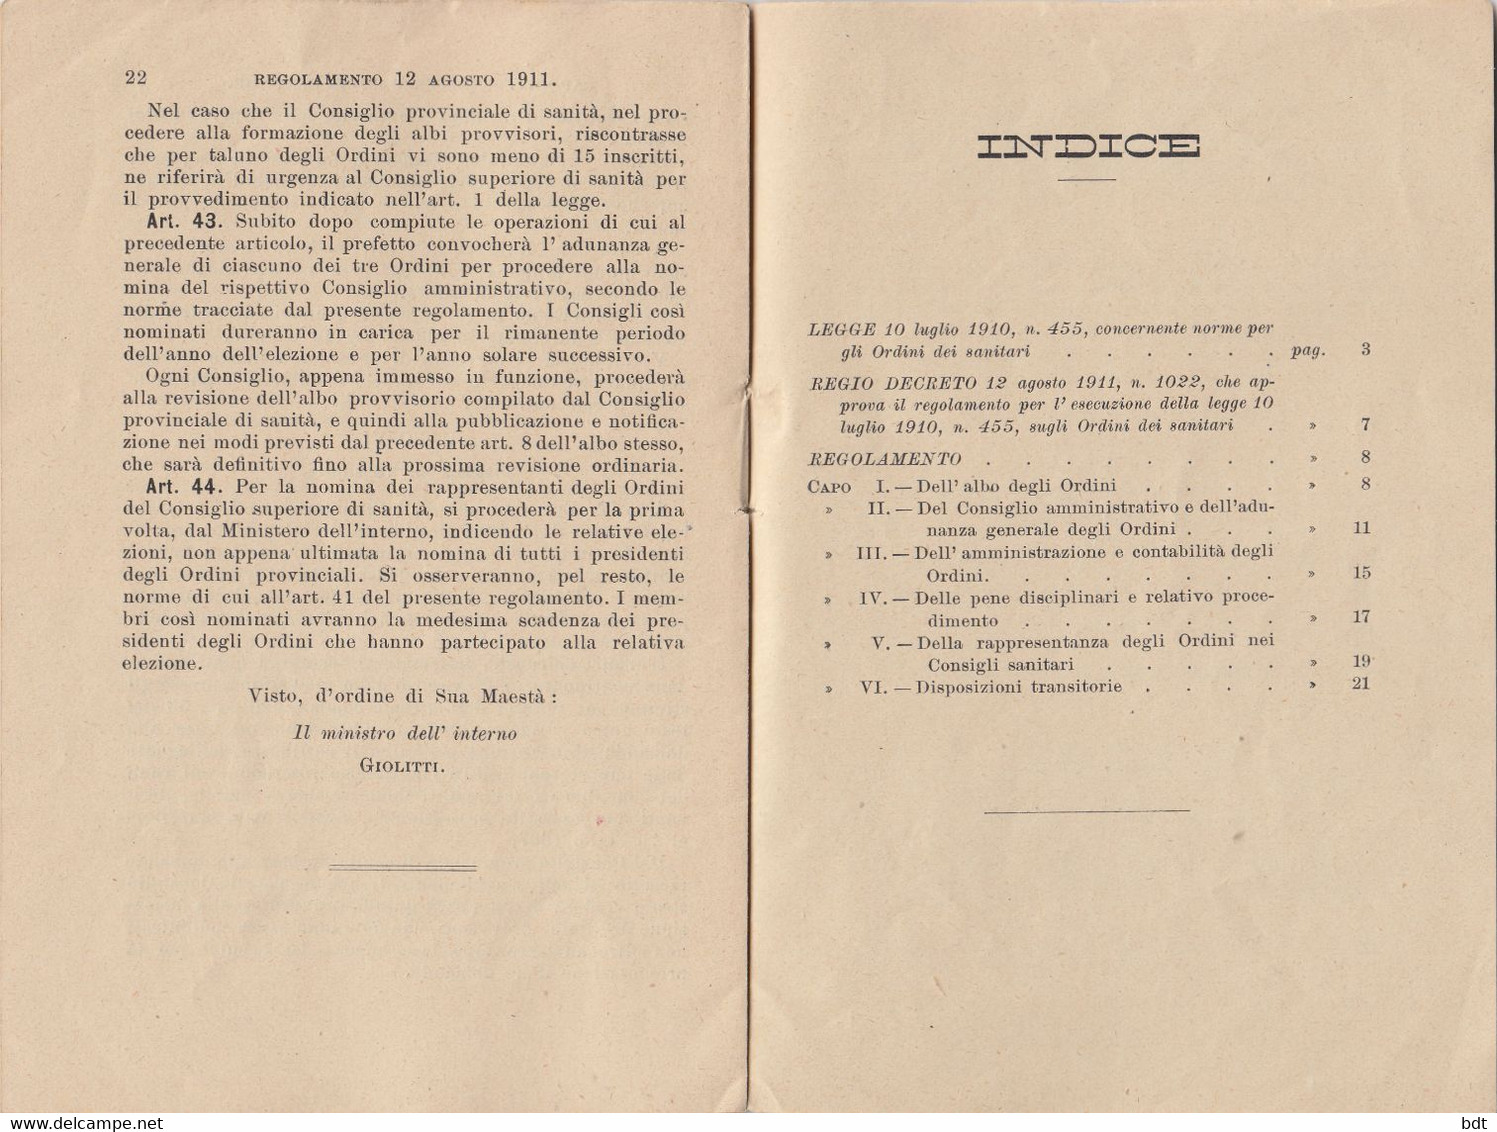 RC093 - 1910 LIBRO COMPLETO 23 PAGINE "LEGGE SUGLI ORDINI DEI SANITARI Del 10/7" - Medicina, Biología, Química